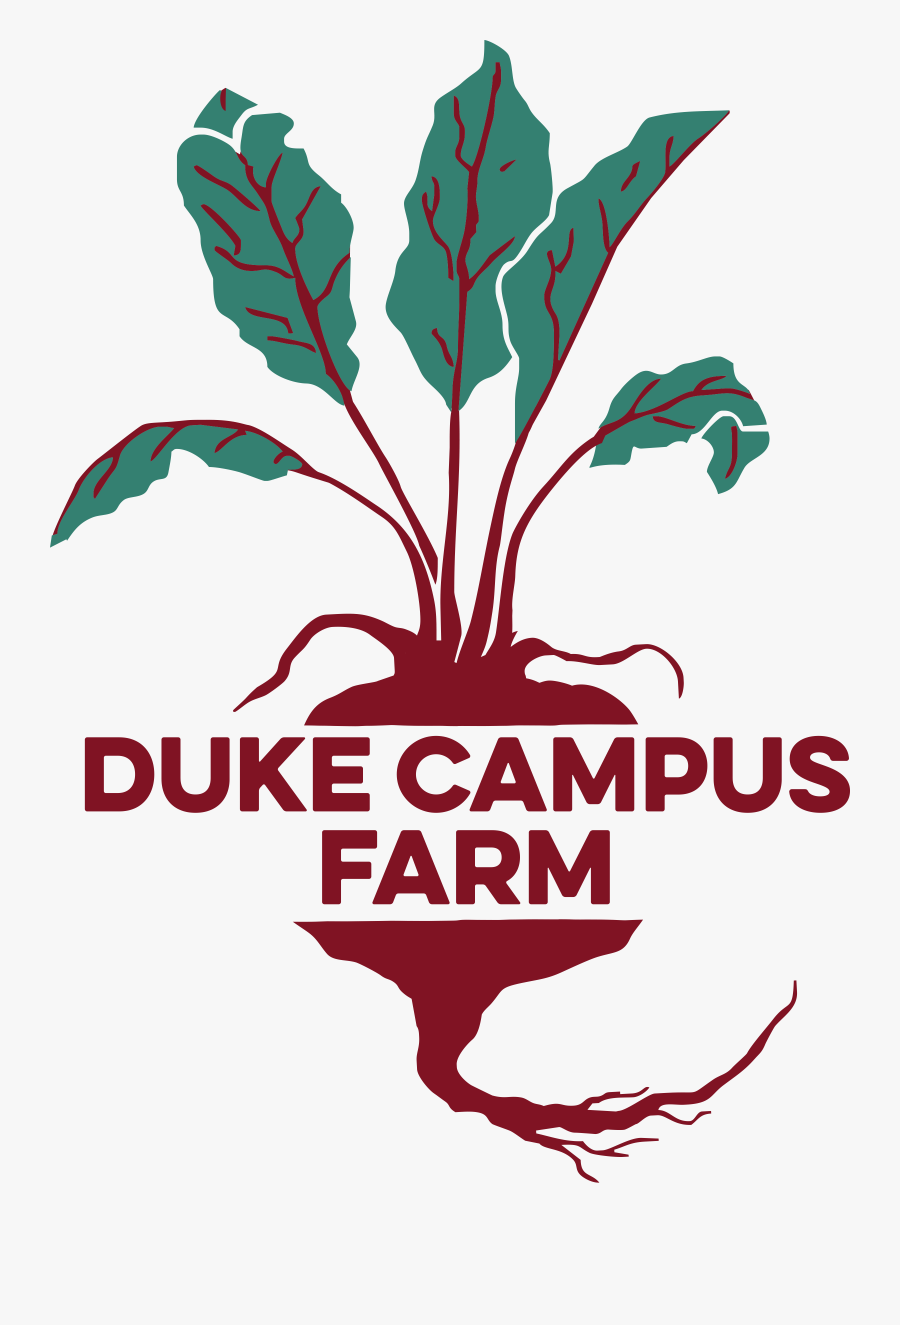 Duke Campus Farm - Chard, Transparent Clipart